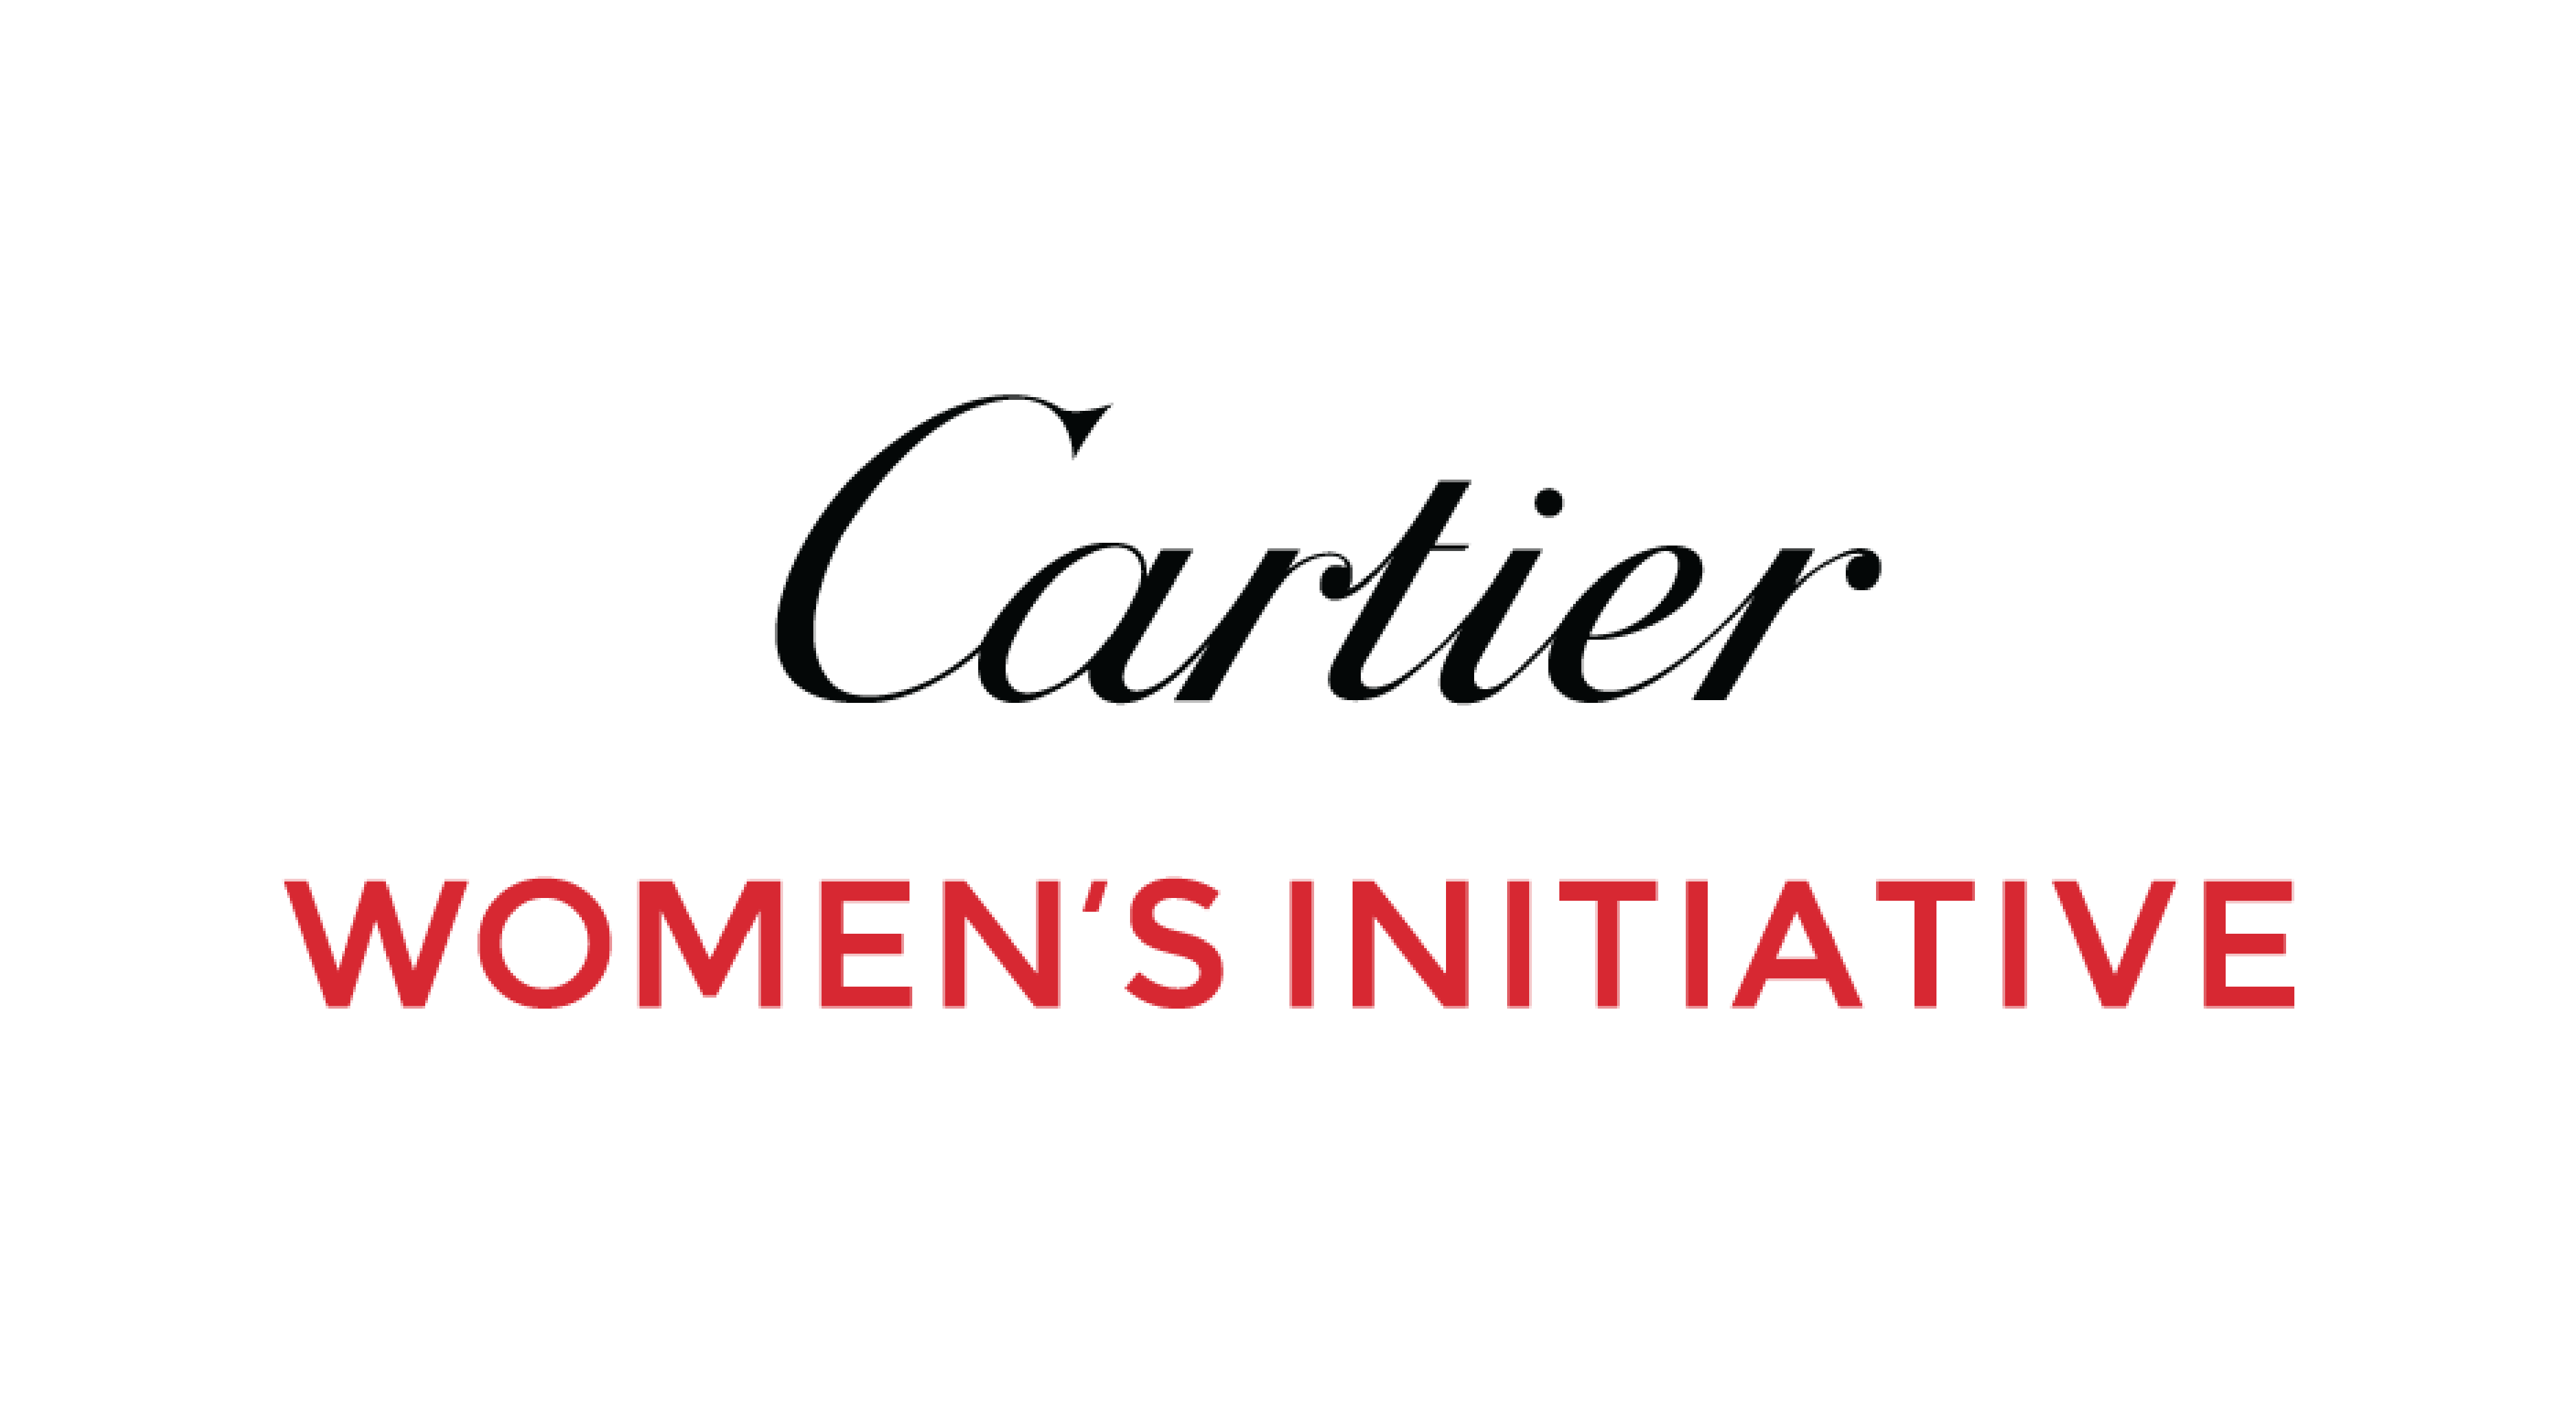 Cartier Women’s Initiativeのイメージ